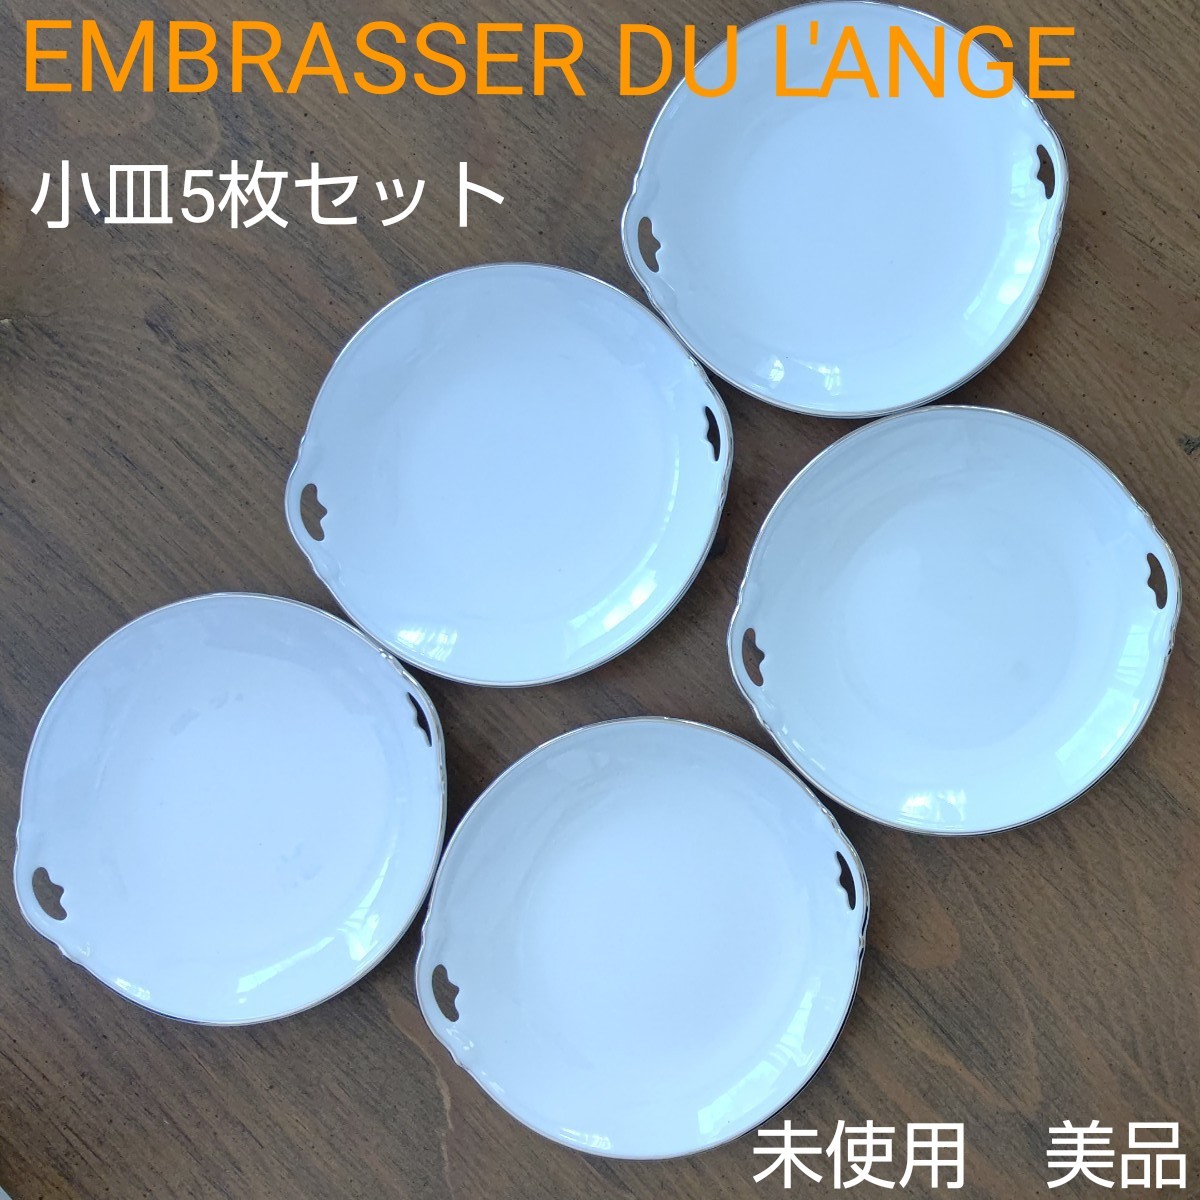 【値下】【未使用】【美品】EMBRASSER DU L'ANGE 小皿 5枚セット  デザート皿